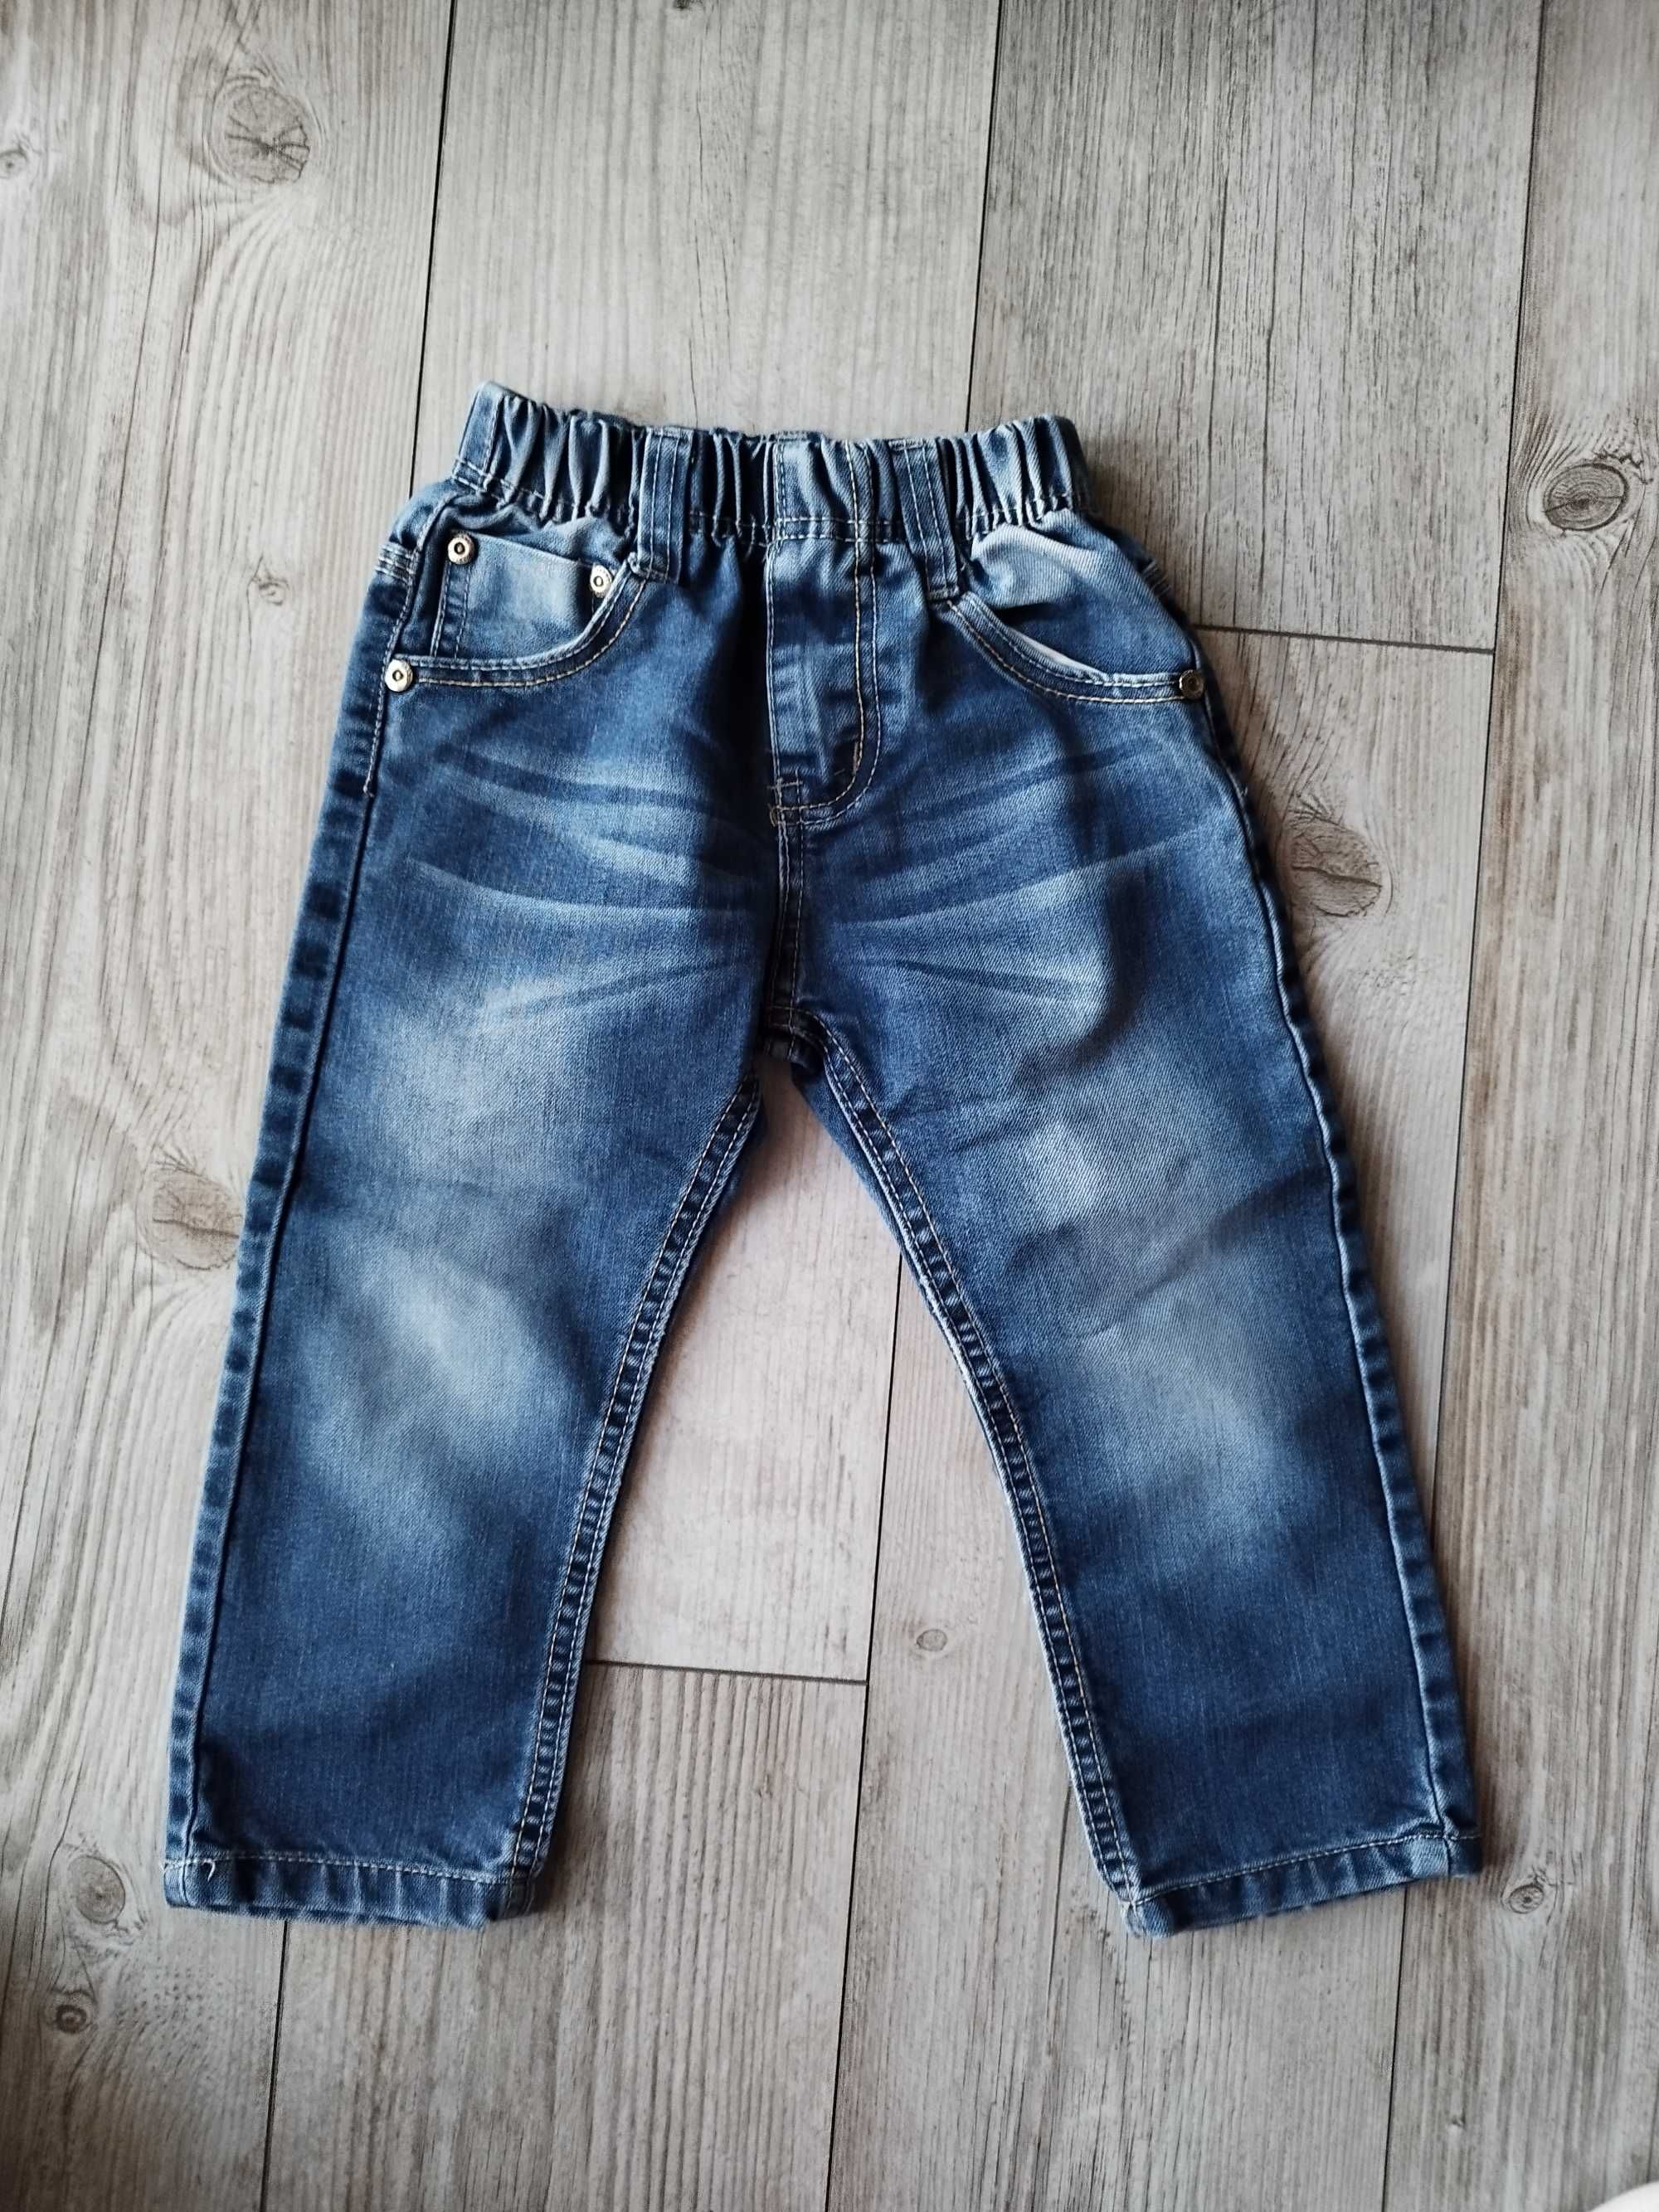 Jeansy 92cm, spodnie jeansowe dla chłopca